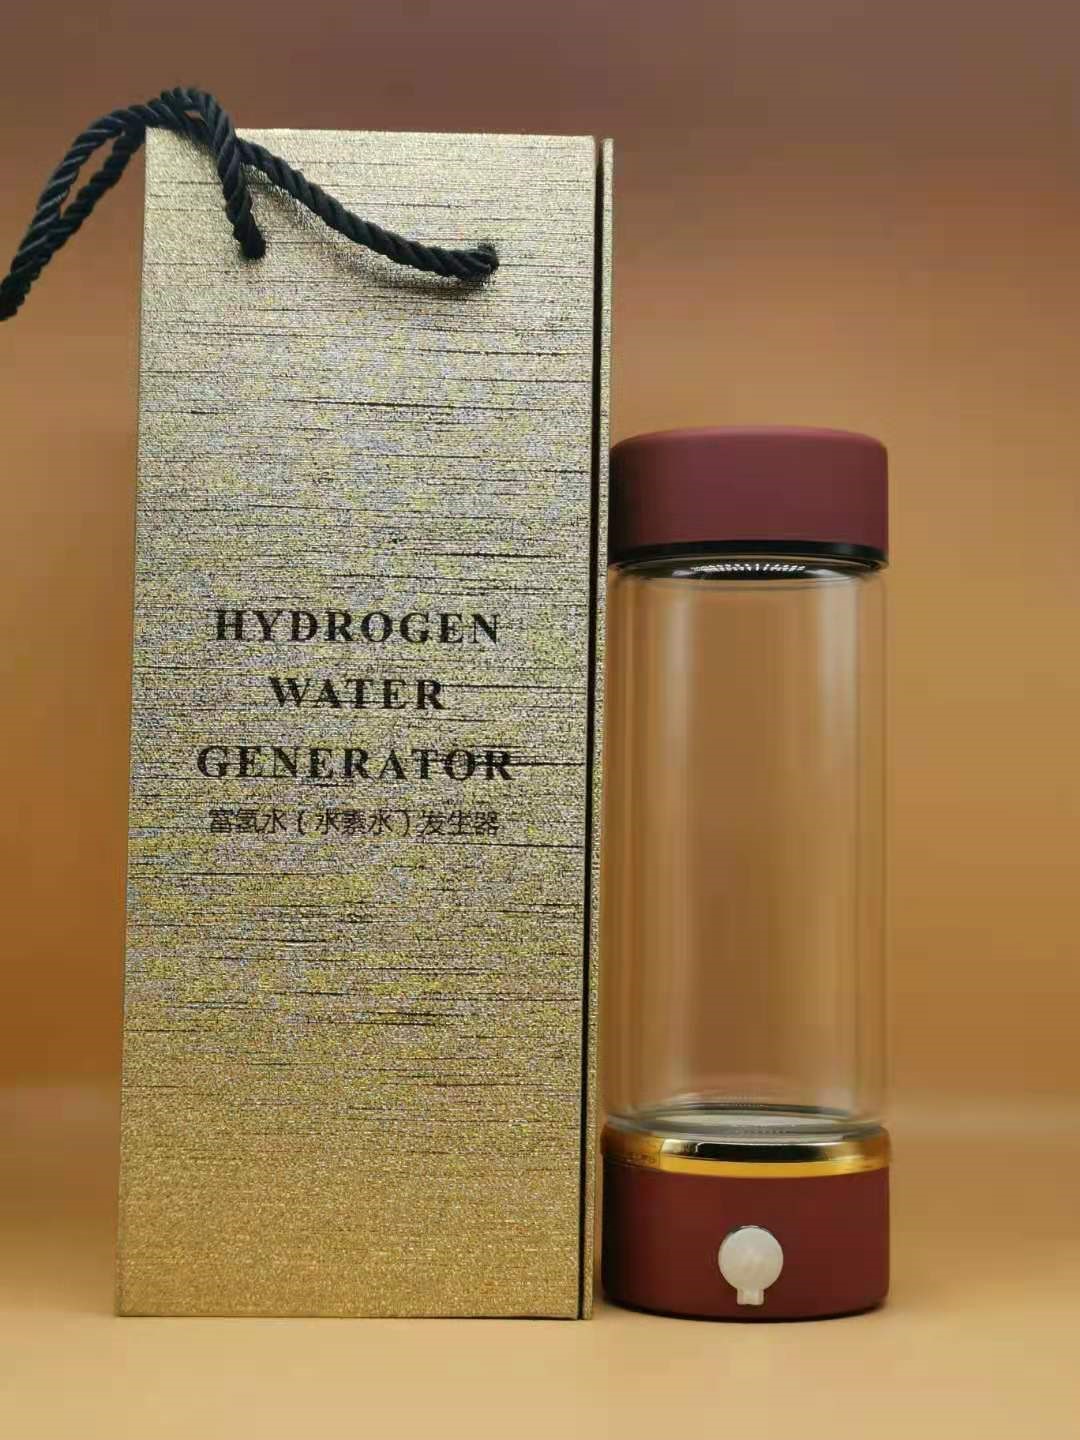 健康的な水素水ボトルのブリーフィングは詳細に